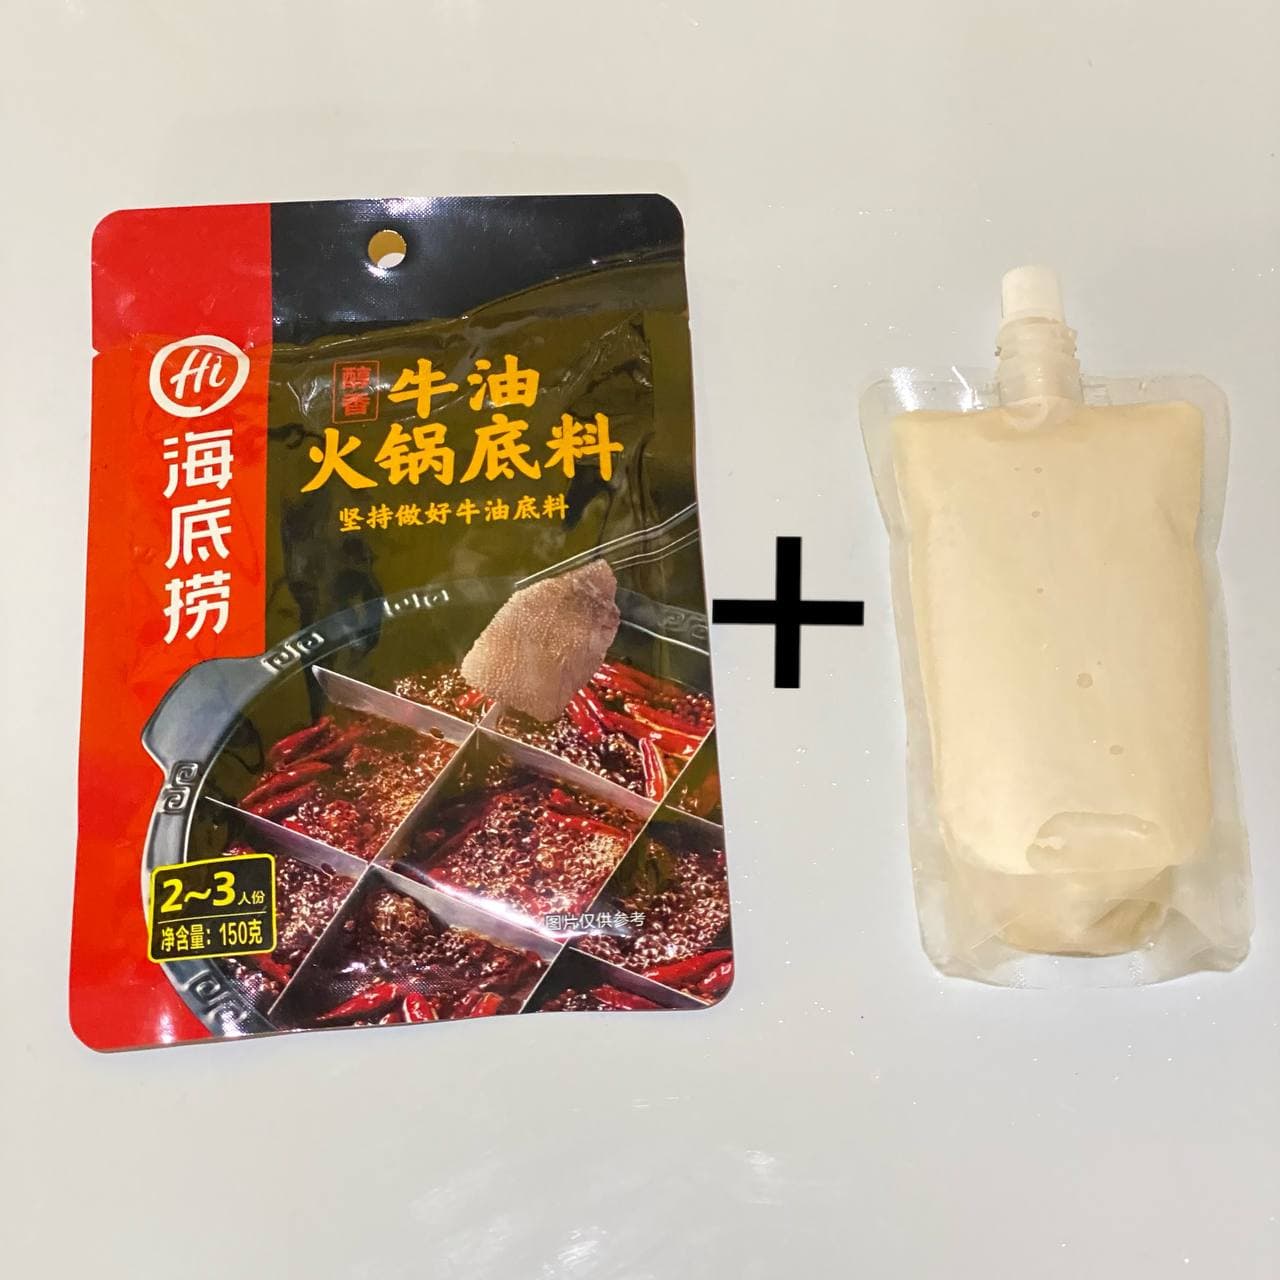 65.Sichuan Chicken Hotpot Set